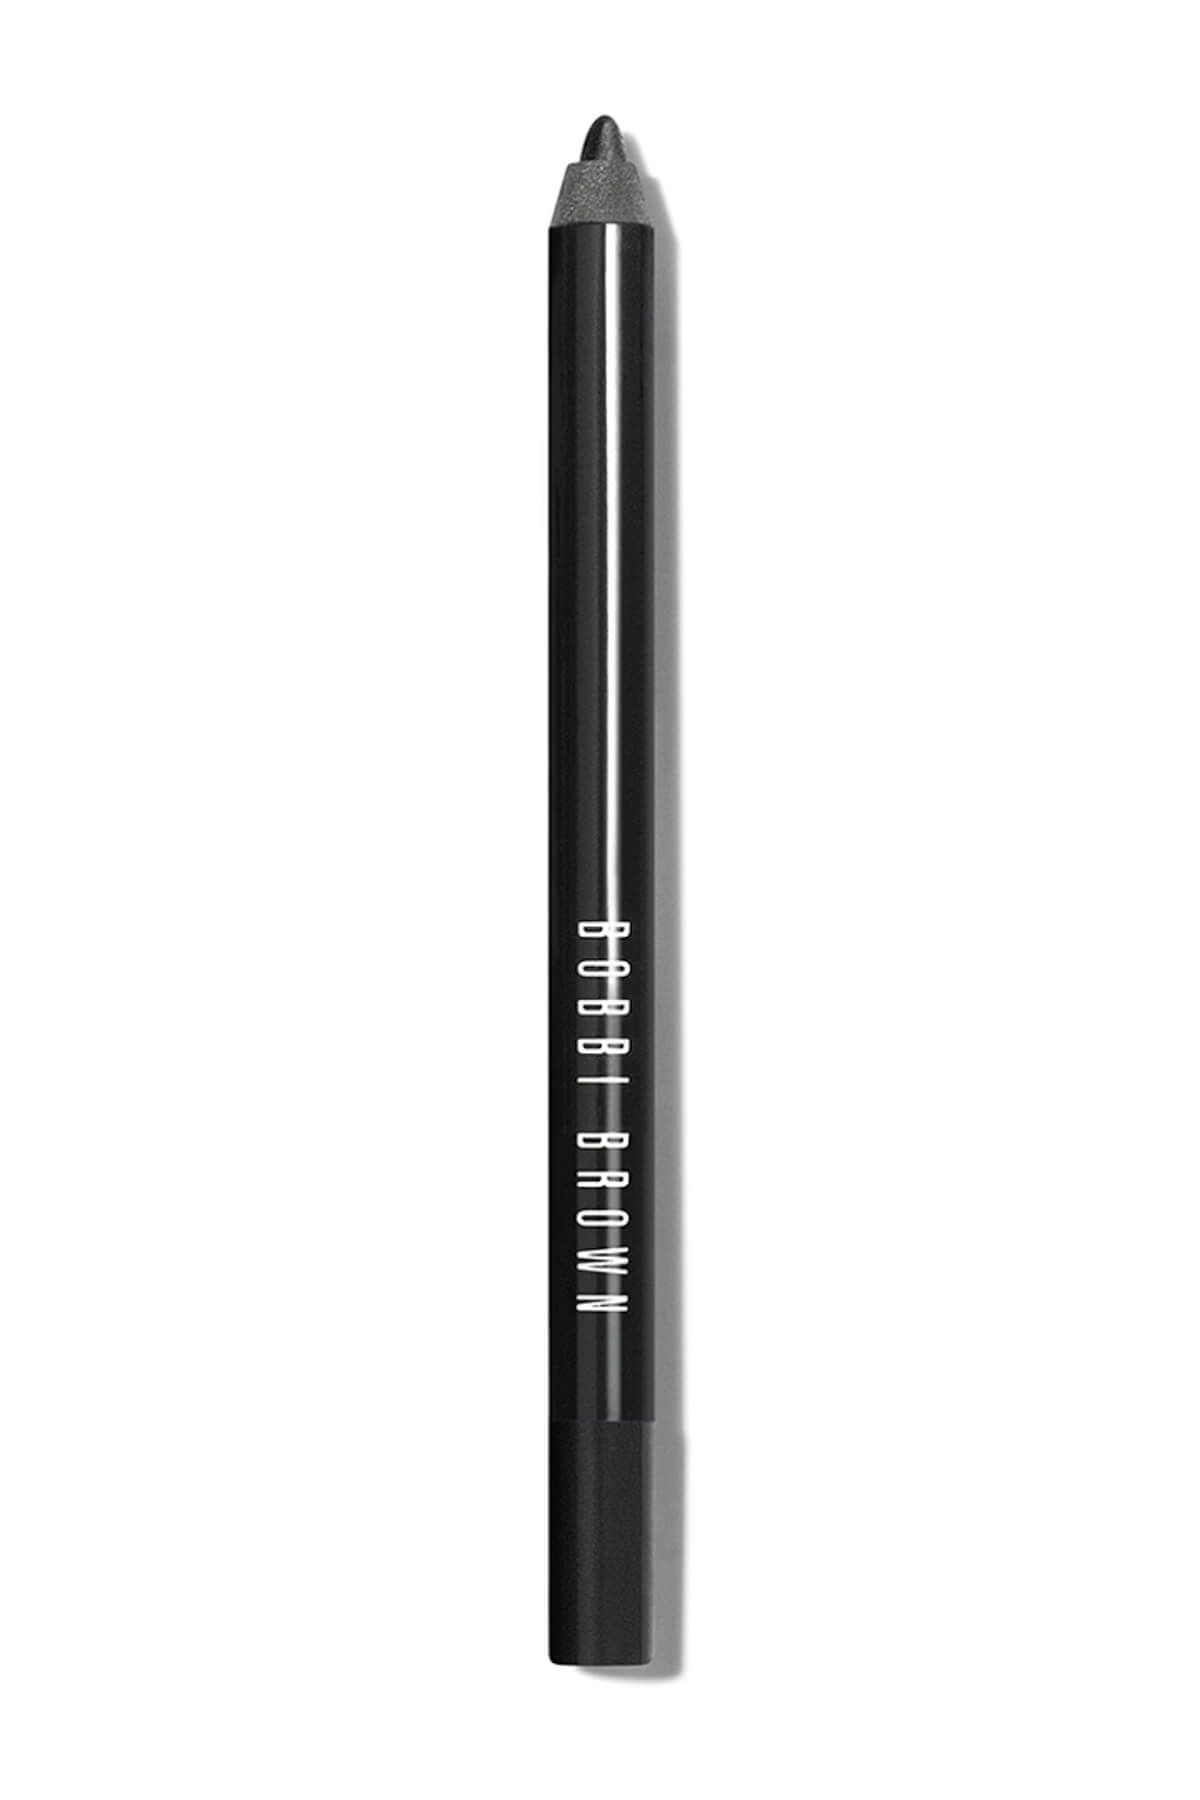 Bobbi Brown Long-wear Eye Pencil / Uzun Süre Kalıcı Göz Kalemi Ss12 1.3 G Jet 716170097343